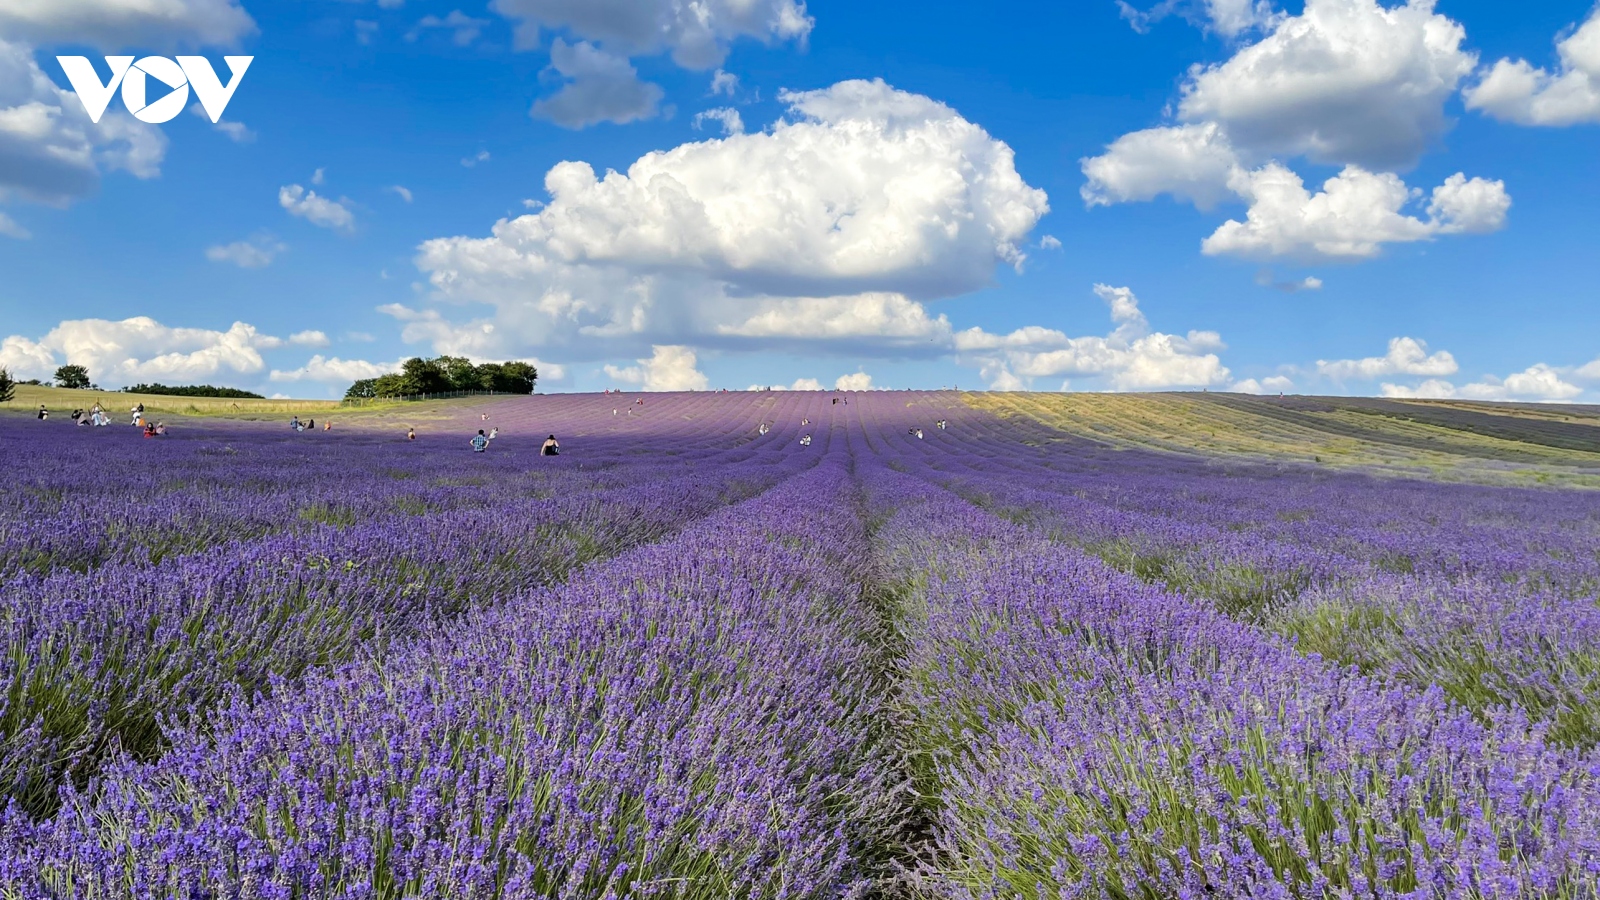 Chẳng cần đến Pháp cũng được ngắm hoa lavender tuyệt đẹp